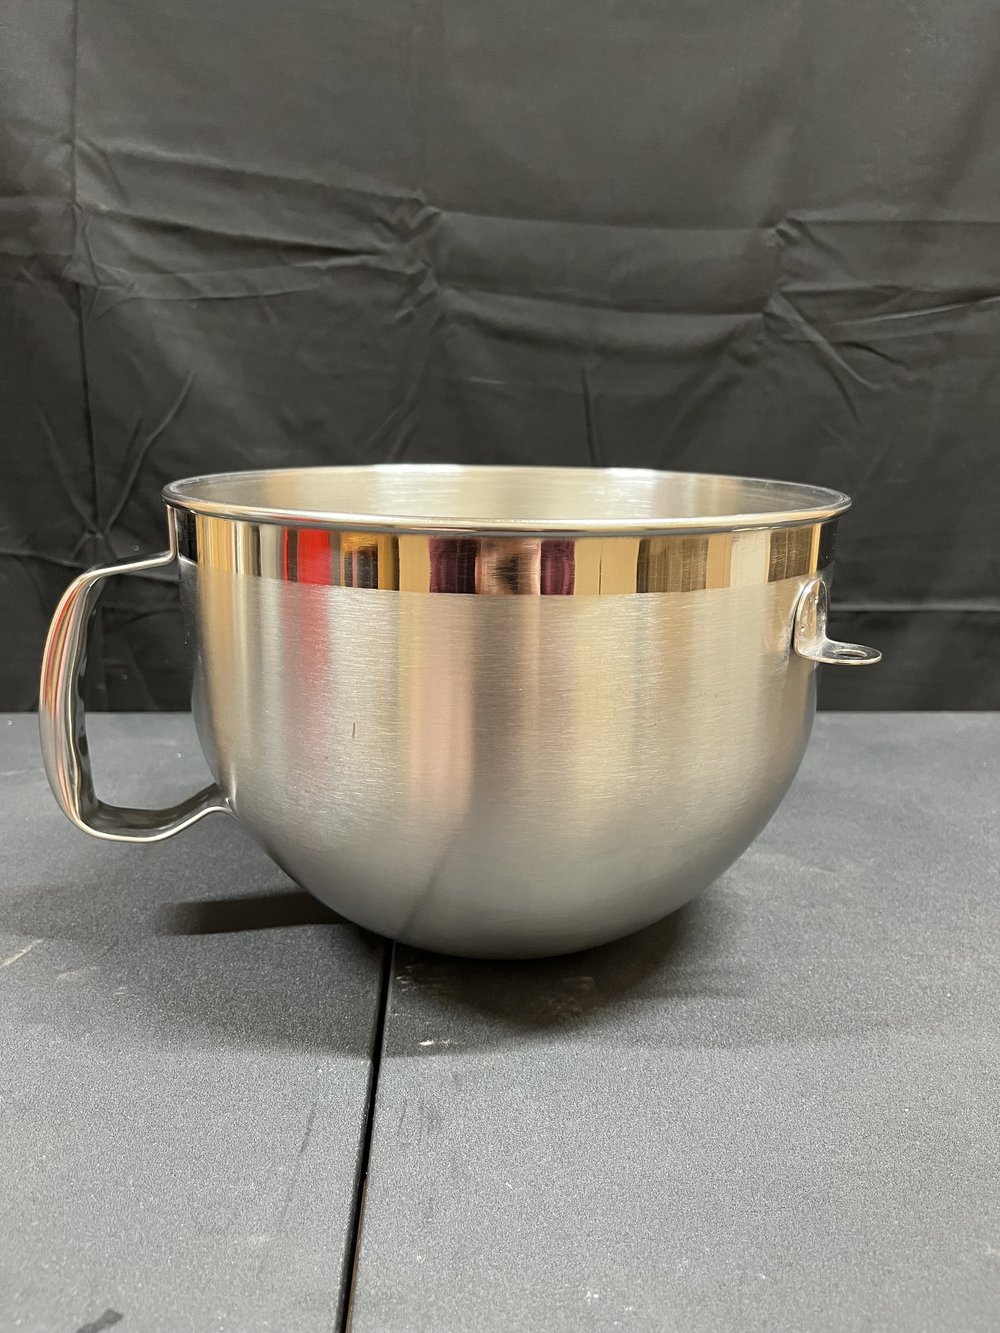 Pro 600 Kitchenaid Mixer Bowl (6qt) — Mr. Mixer